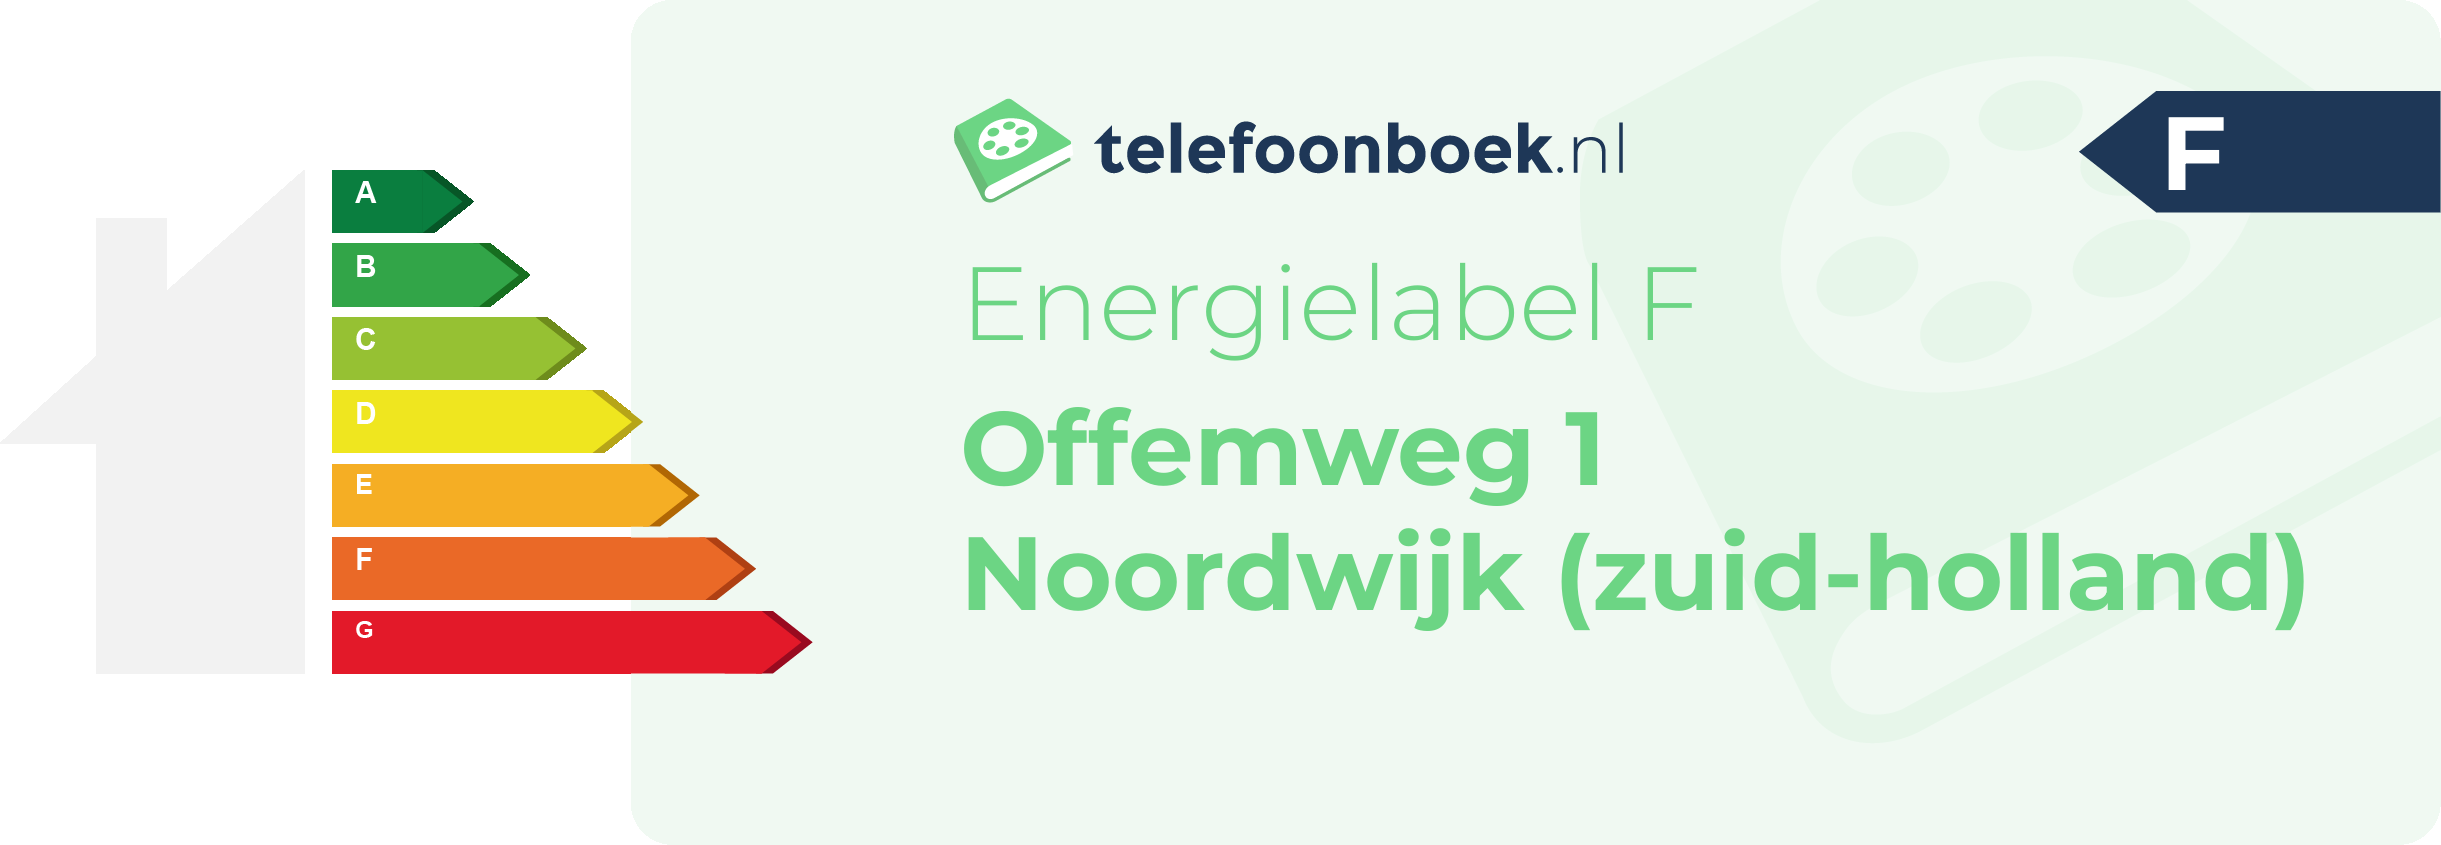 Energielabel Offemweg 1 Noordwijk (Zuid-Holland)